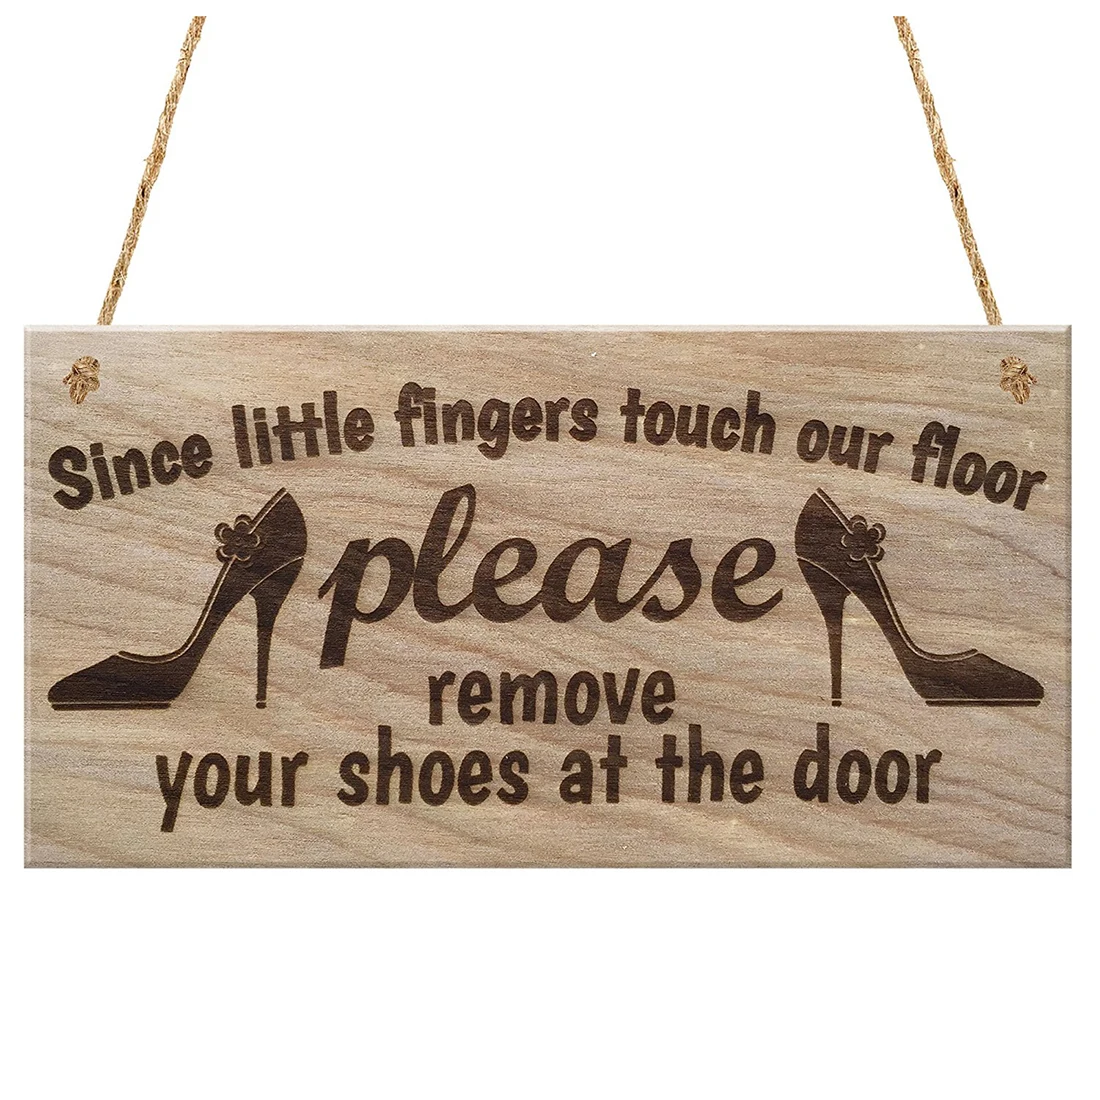 Практичный бутик, так как маленькие пальцы коснутся нашего пола, пожалуйста, снимите обувь у Двери Табличка деревянная вывеска подарок